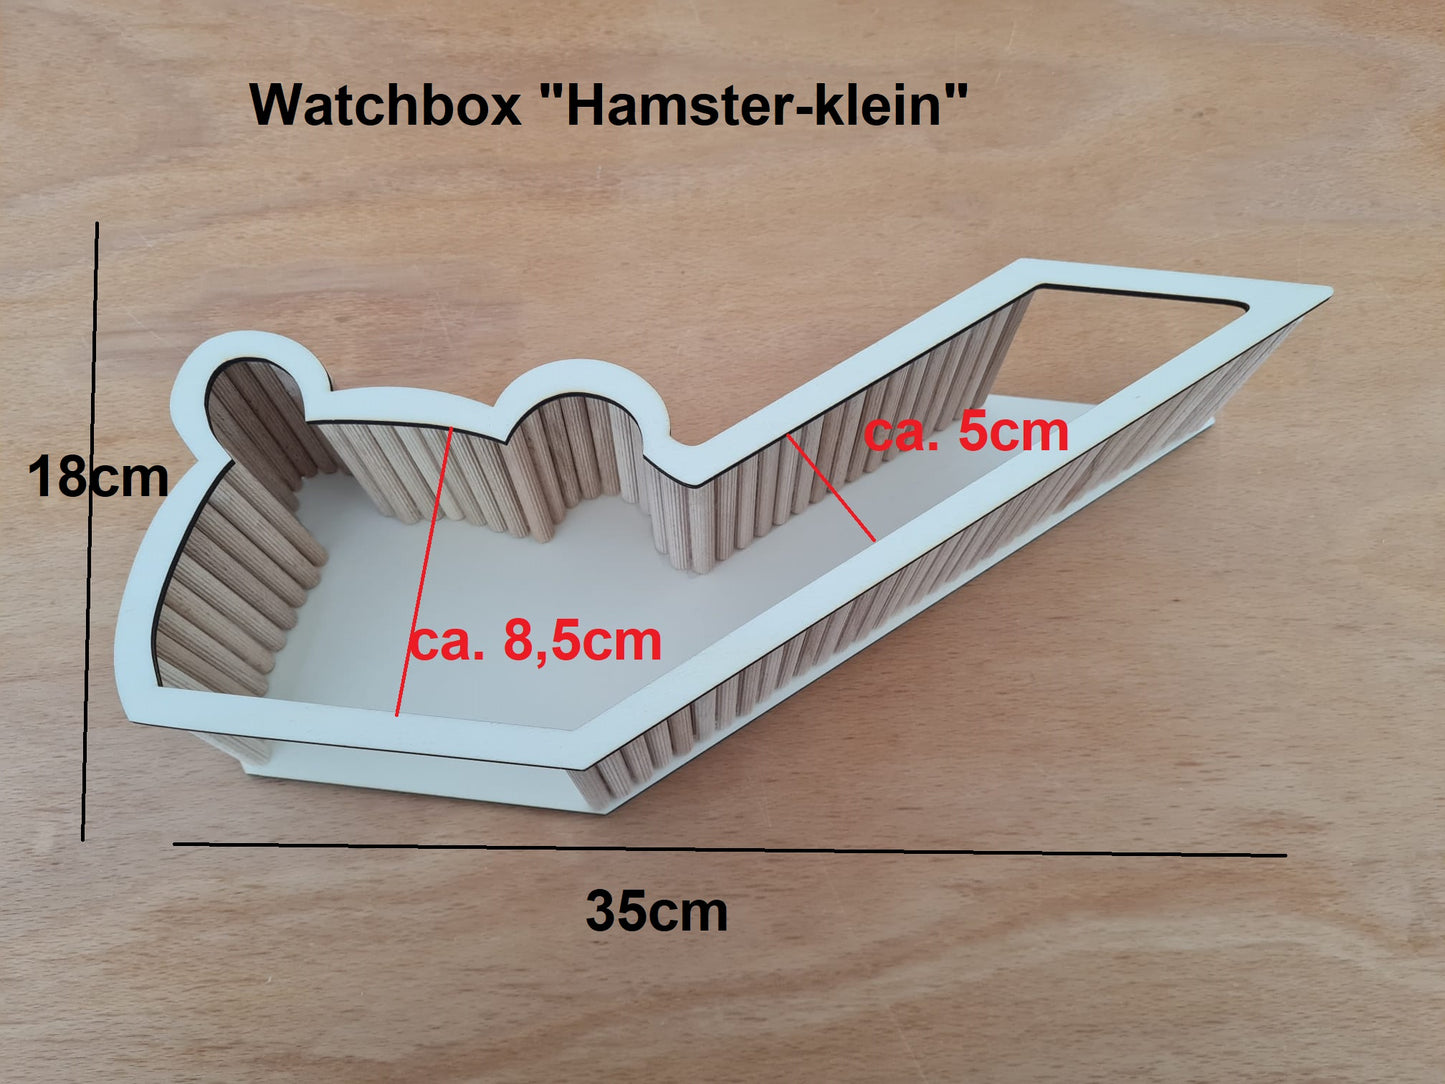 BAUSATZ *Hamster-Klein* Watchbox für Kleinnager